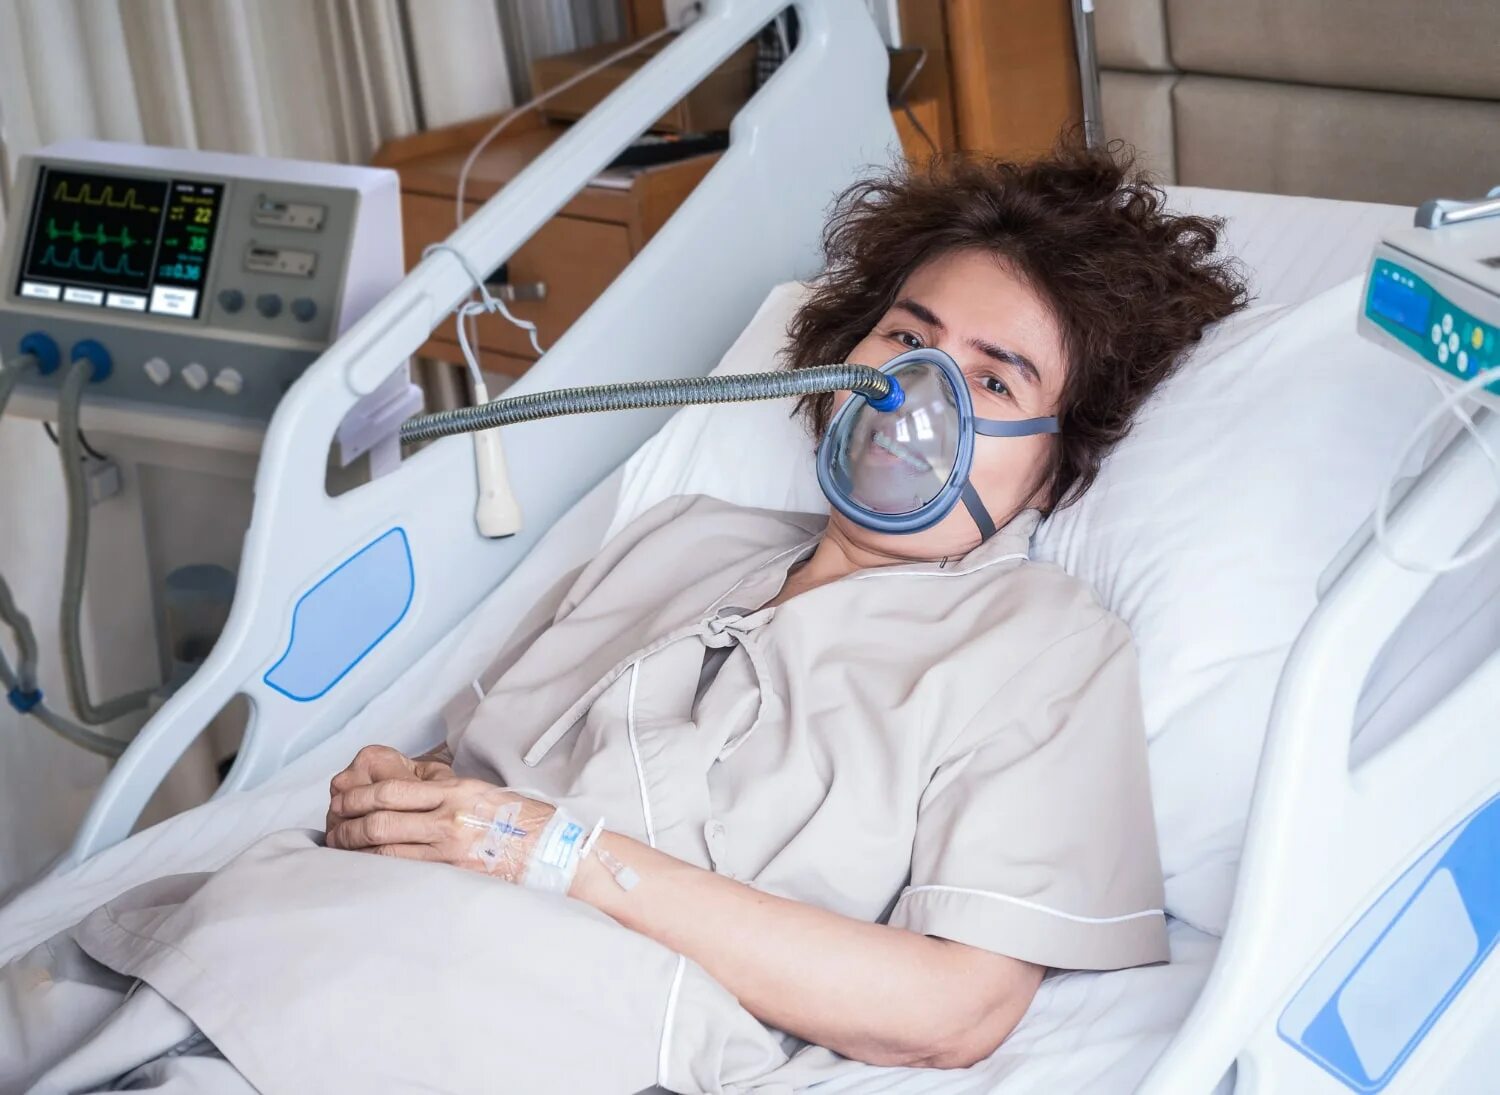 ИВЛ аппарат в реанимации. Дыхательный аппарат в больнице. Девушка под аппаратом искусственного дыхания.